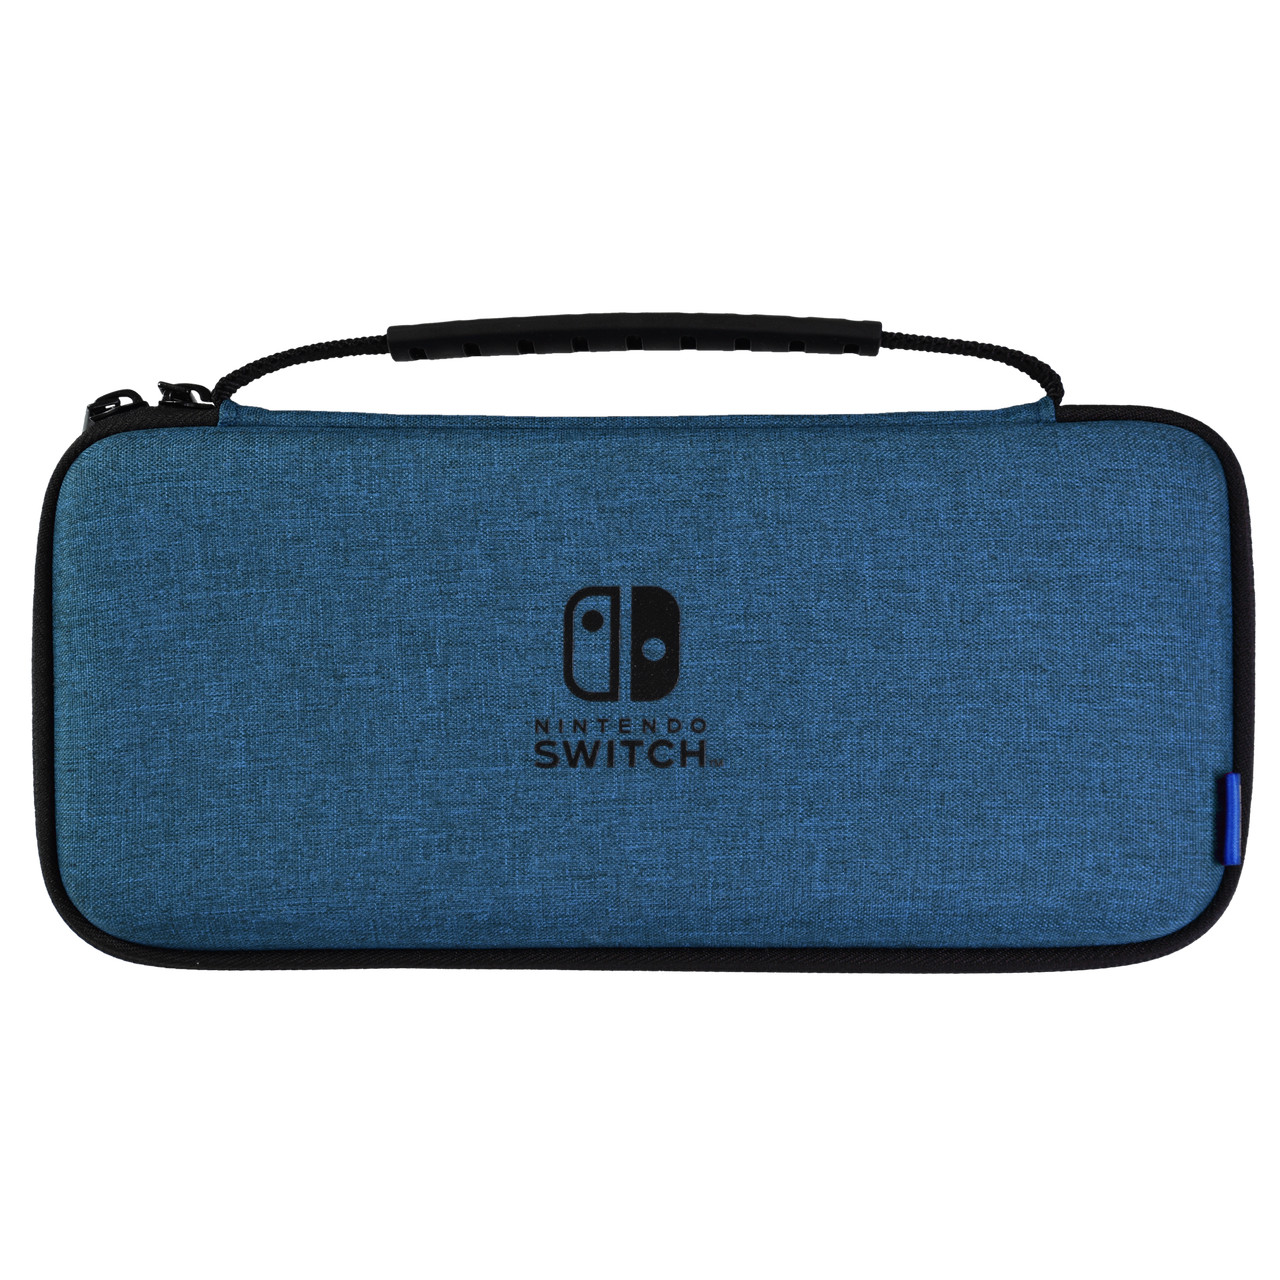 Hori Slim Tough Pouch Blue for Nintendo Switch OLED (NSW-811U) - зображення 1